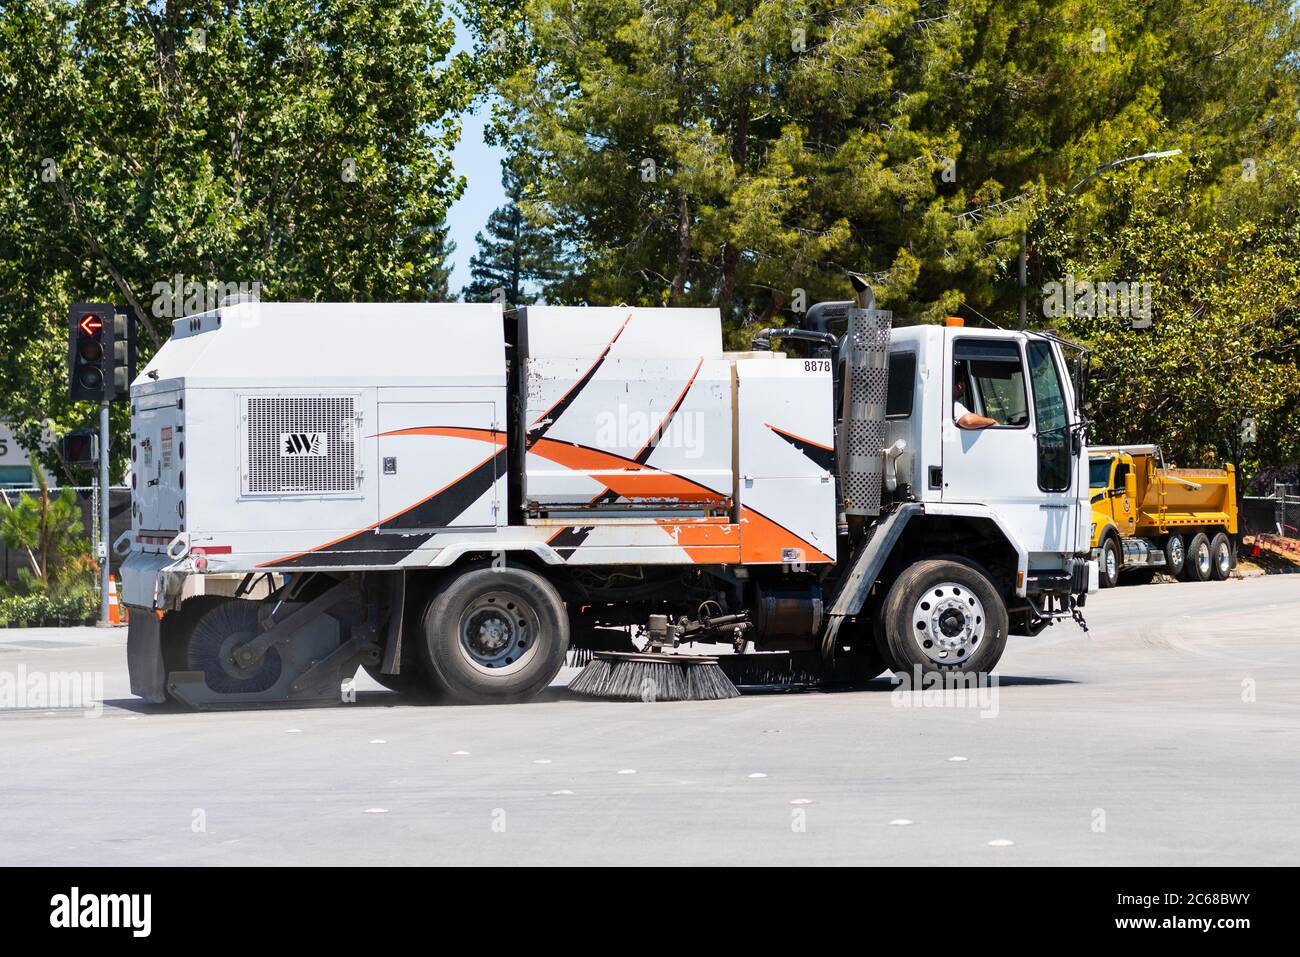 1 luglio 2020 Sunnyvale / CA / USA - macchina spazzatrice stradale operante nella zona sud della baia di San Francisco Foto Stock